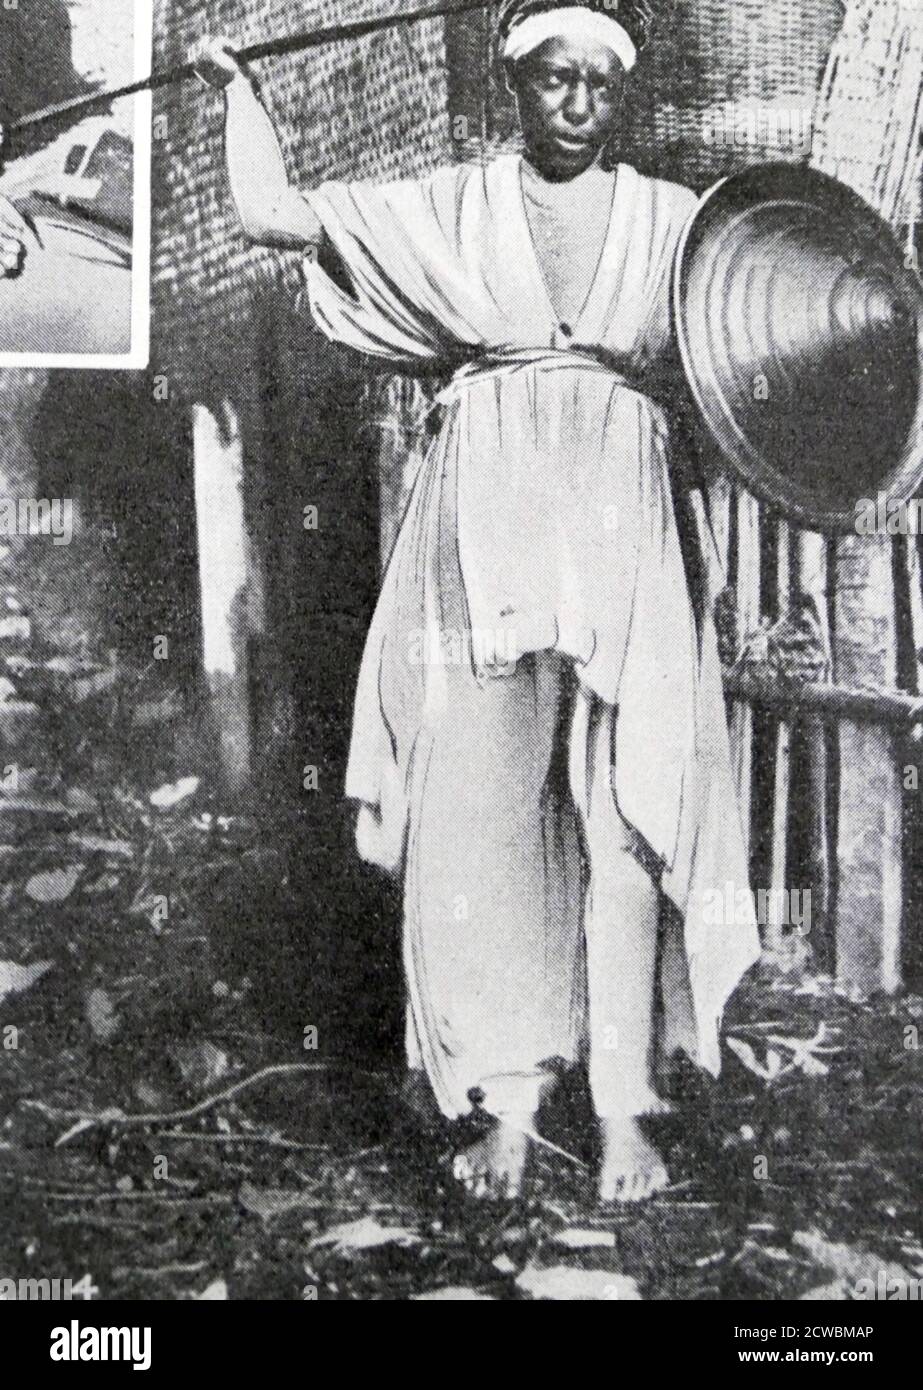 Schwarz-Weiß-Foto des Krieges in Äthiopien nach der italienischen Invasion von 1935; äthiopische Frau in Kriegskleidung, die sich auf den Kampf vorbereitet. Stockfoto